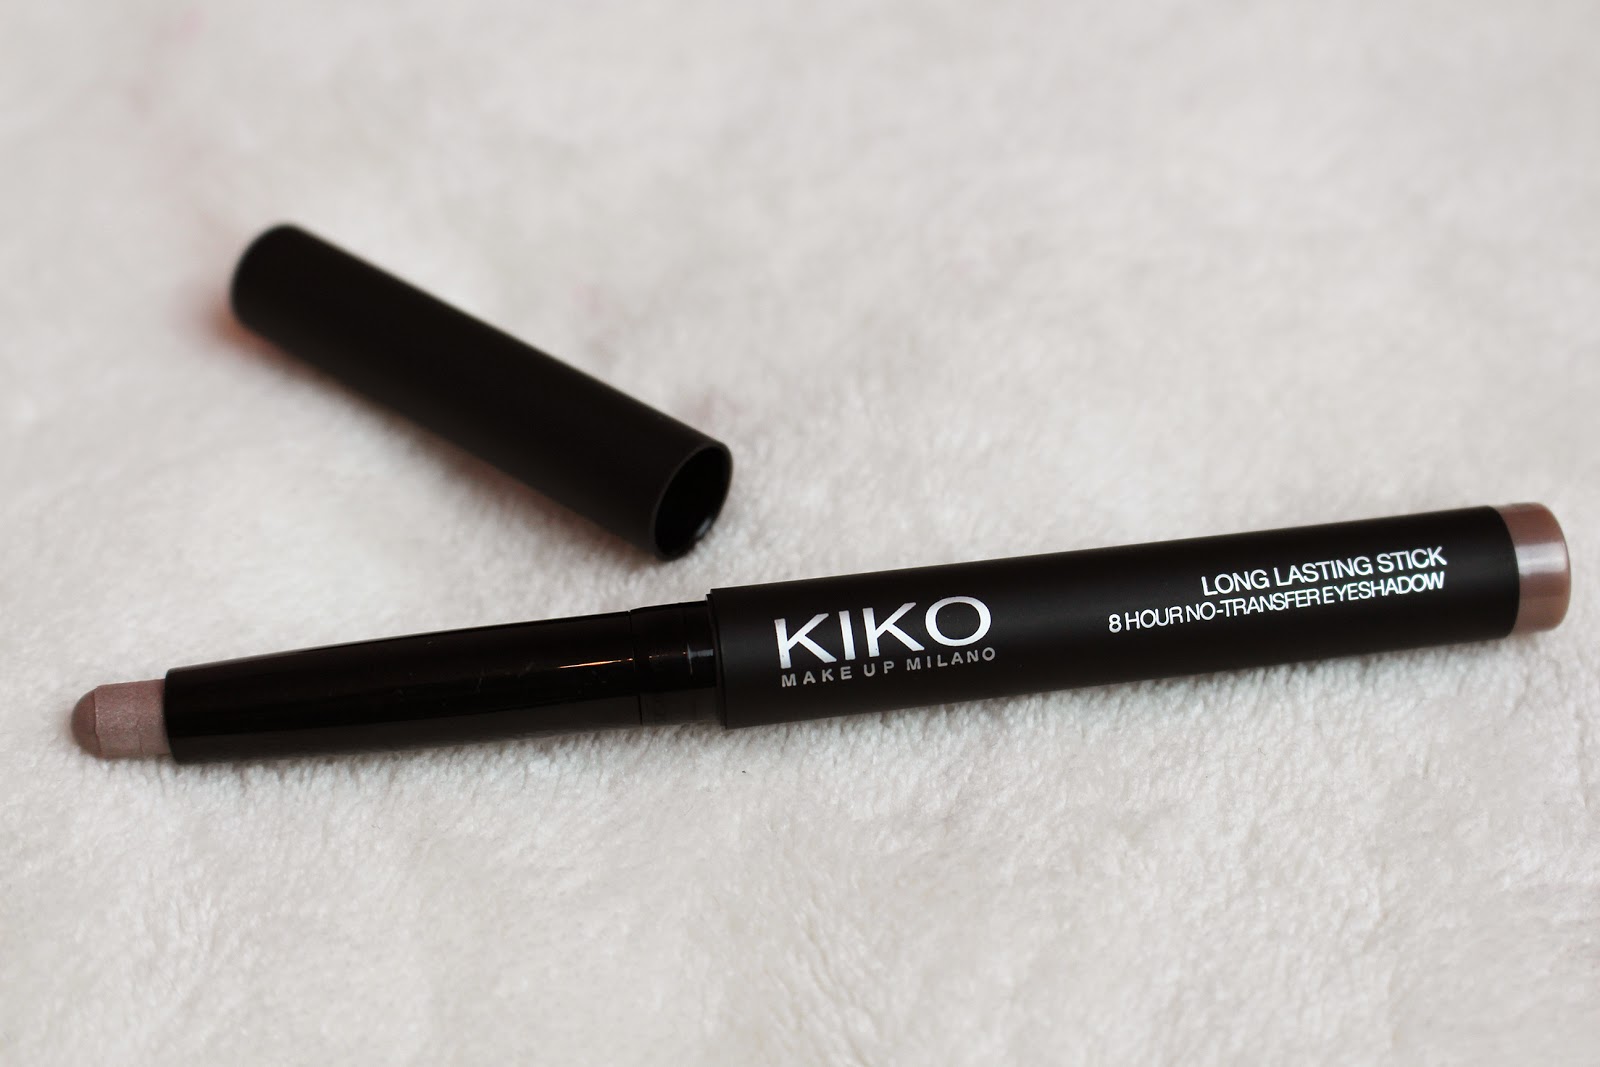 Kiko long lasting stick eyeshadow. Kiko long lasting Stick Eyeshadow №39. Long lasting Eyeshadow Stick Kiko 60. Стик Кико 46. Long lasting Eyeshadow Stick.